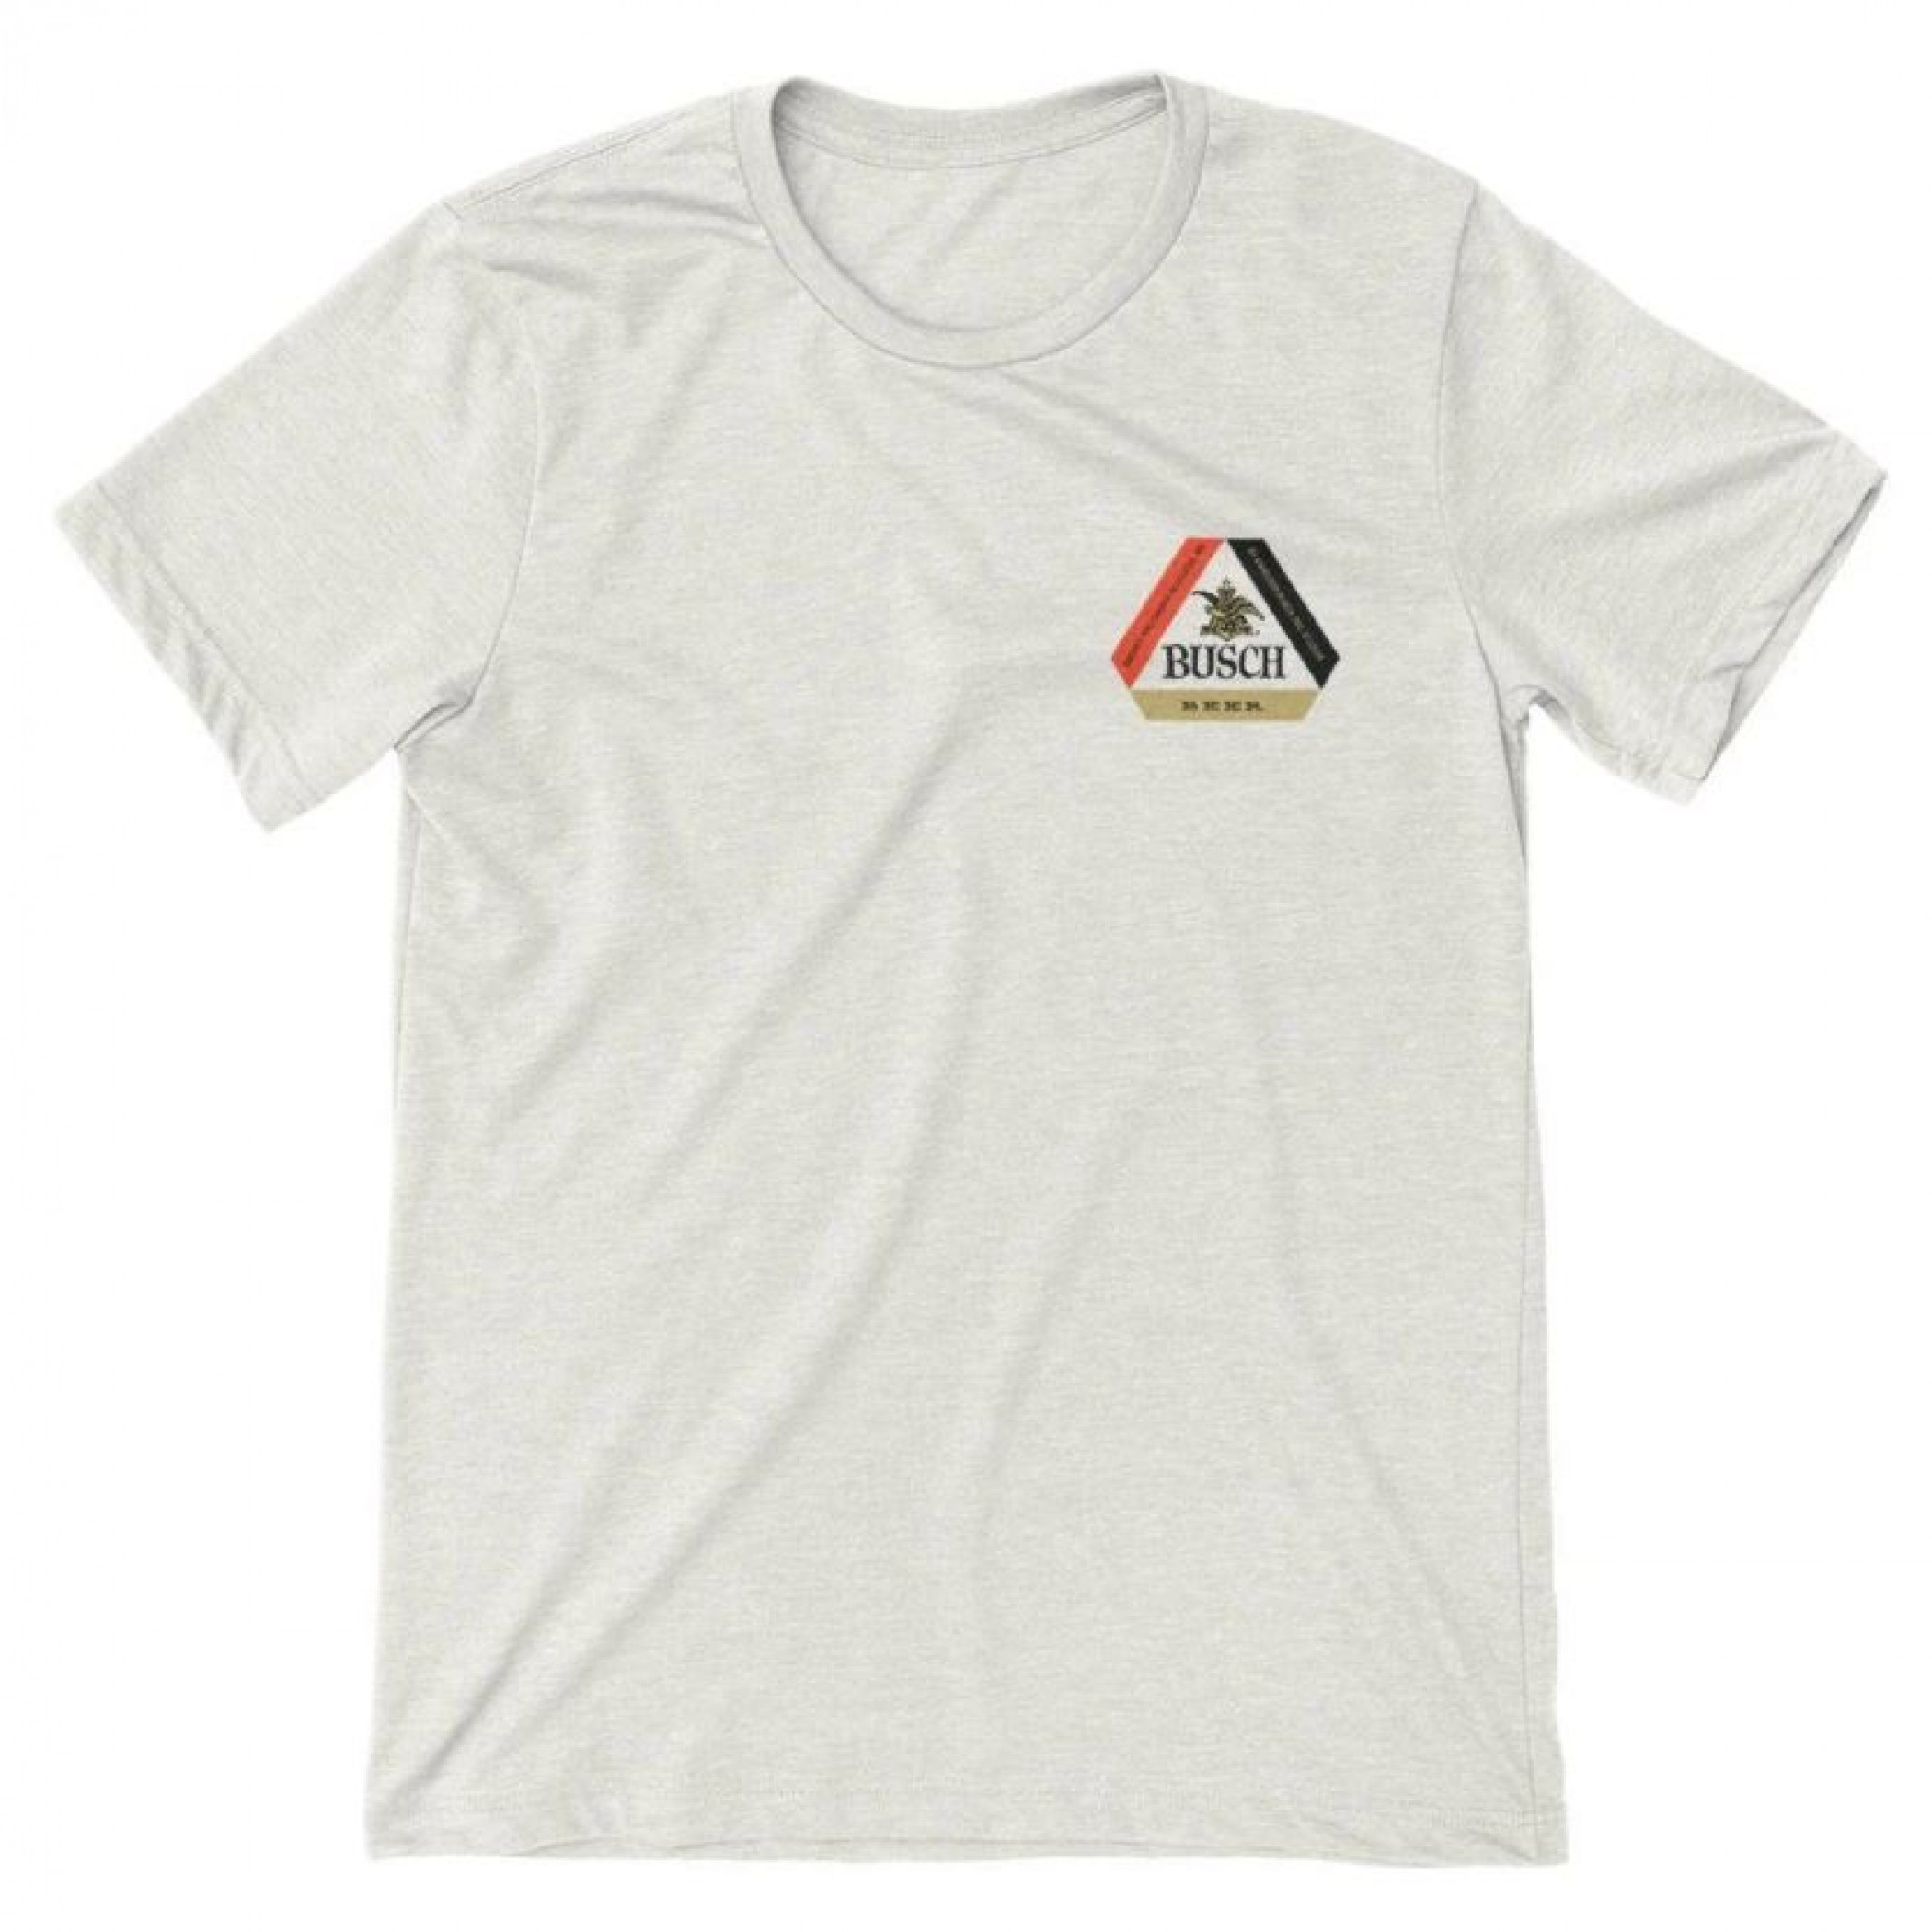 Busch Tab Top Retro Logo Can Design T-Shirt